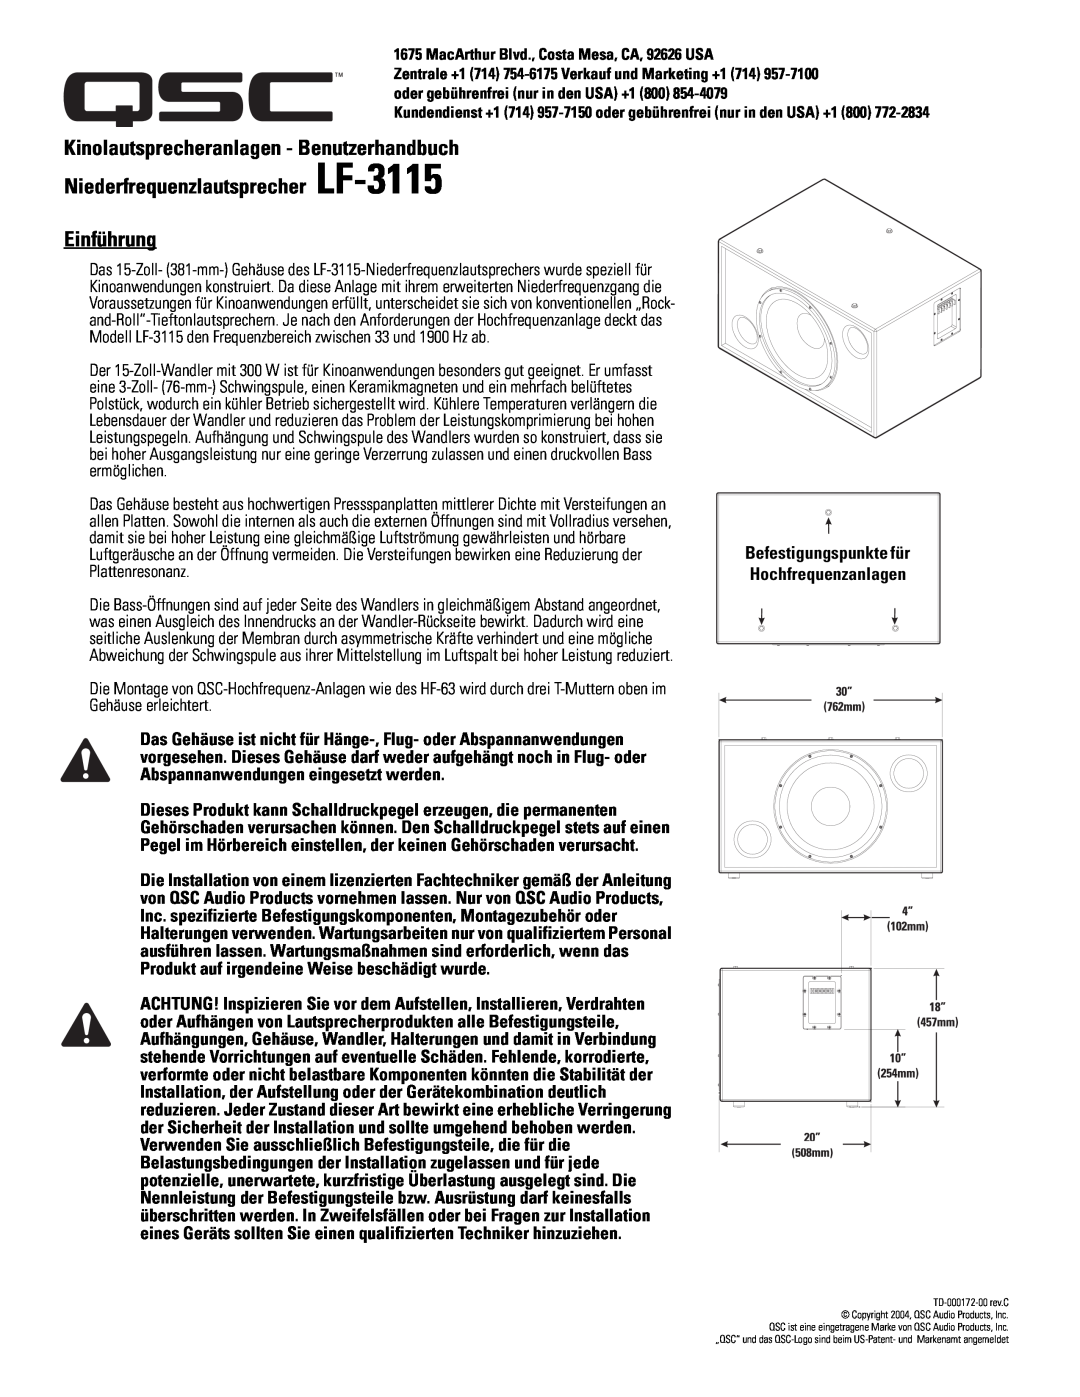 QSC Audio SC-312X specifications Kinolautsprecheranlagen - Benutzerhandbuch, Niederfrequenzlautsprecher LF-3115 Einführung 